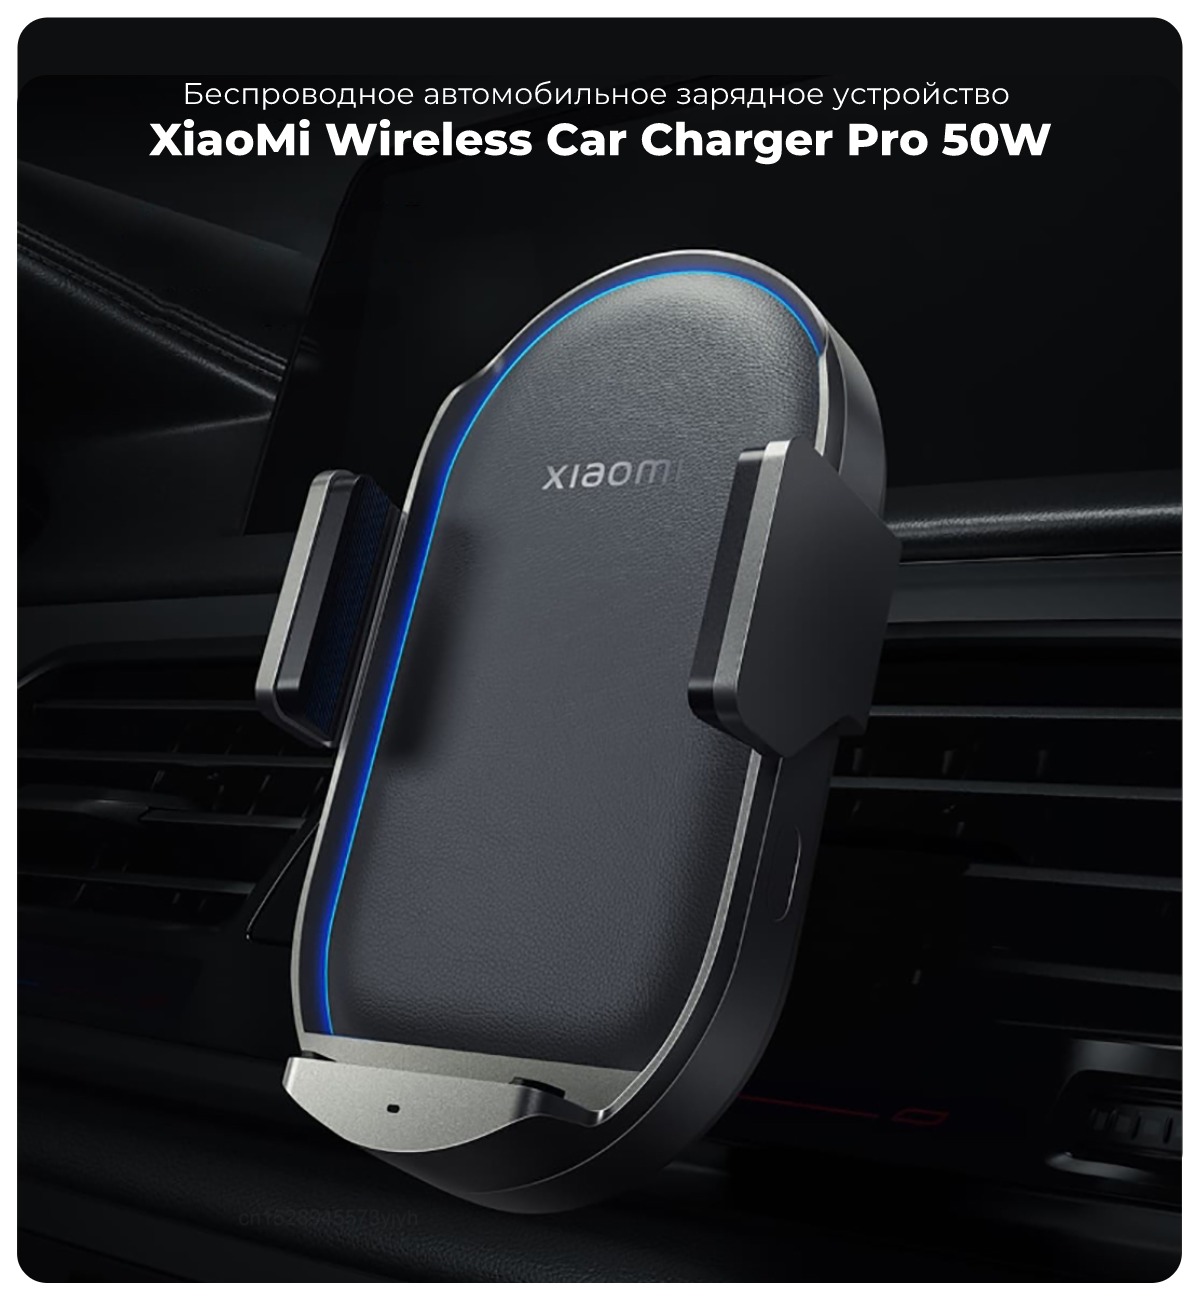 XiaoMi-Wireless-Car-Charger-Pro-50W-WCJ05ZM-01